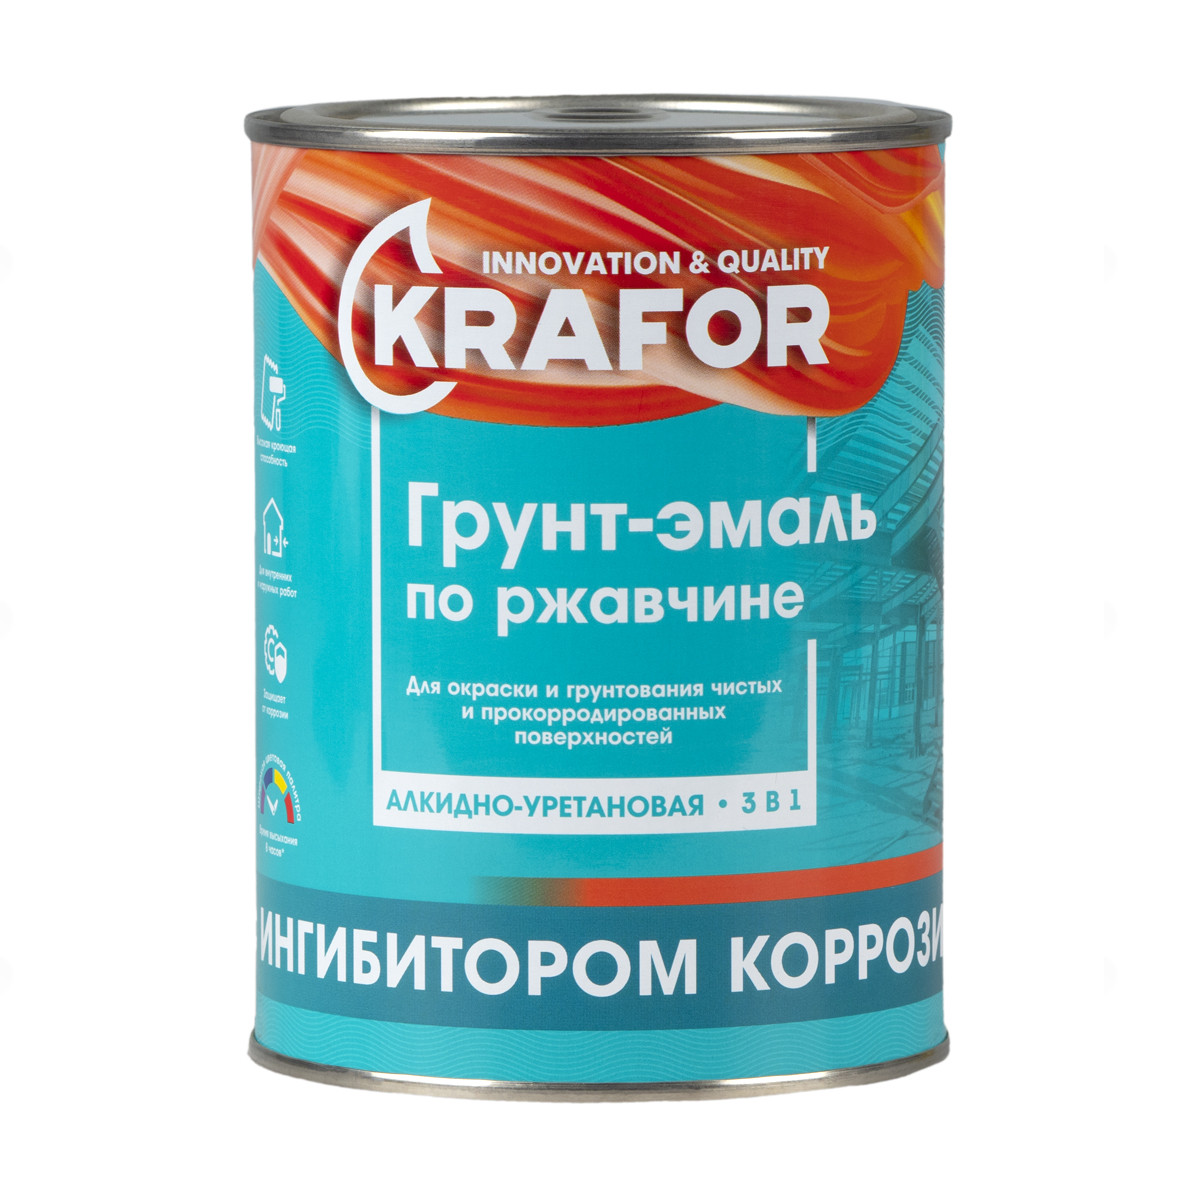 KRAFOR Грунт-эмаль по ржавчине шоколадная 1 кг 14 26698